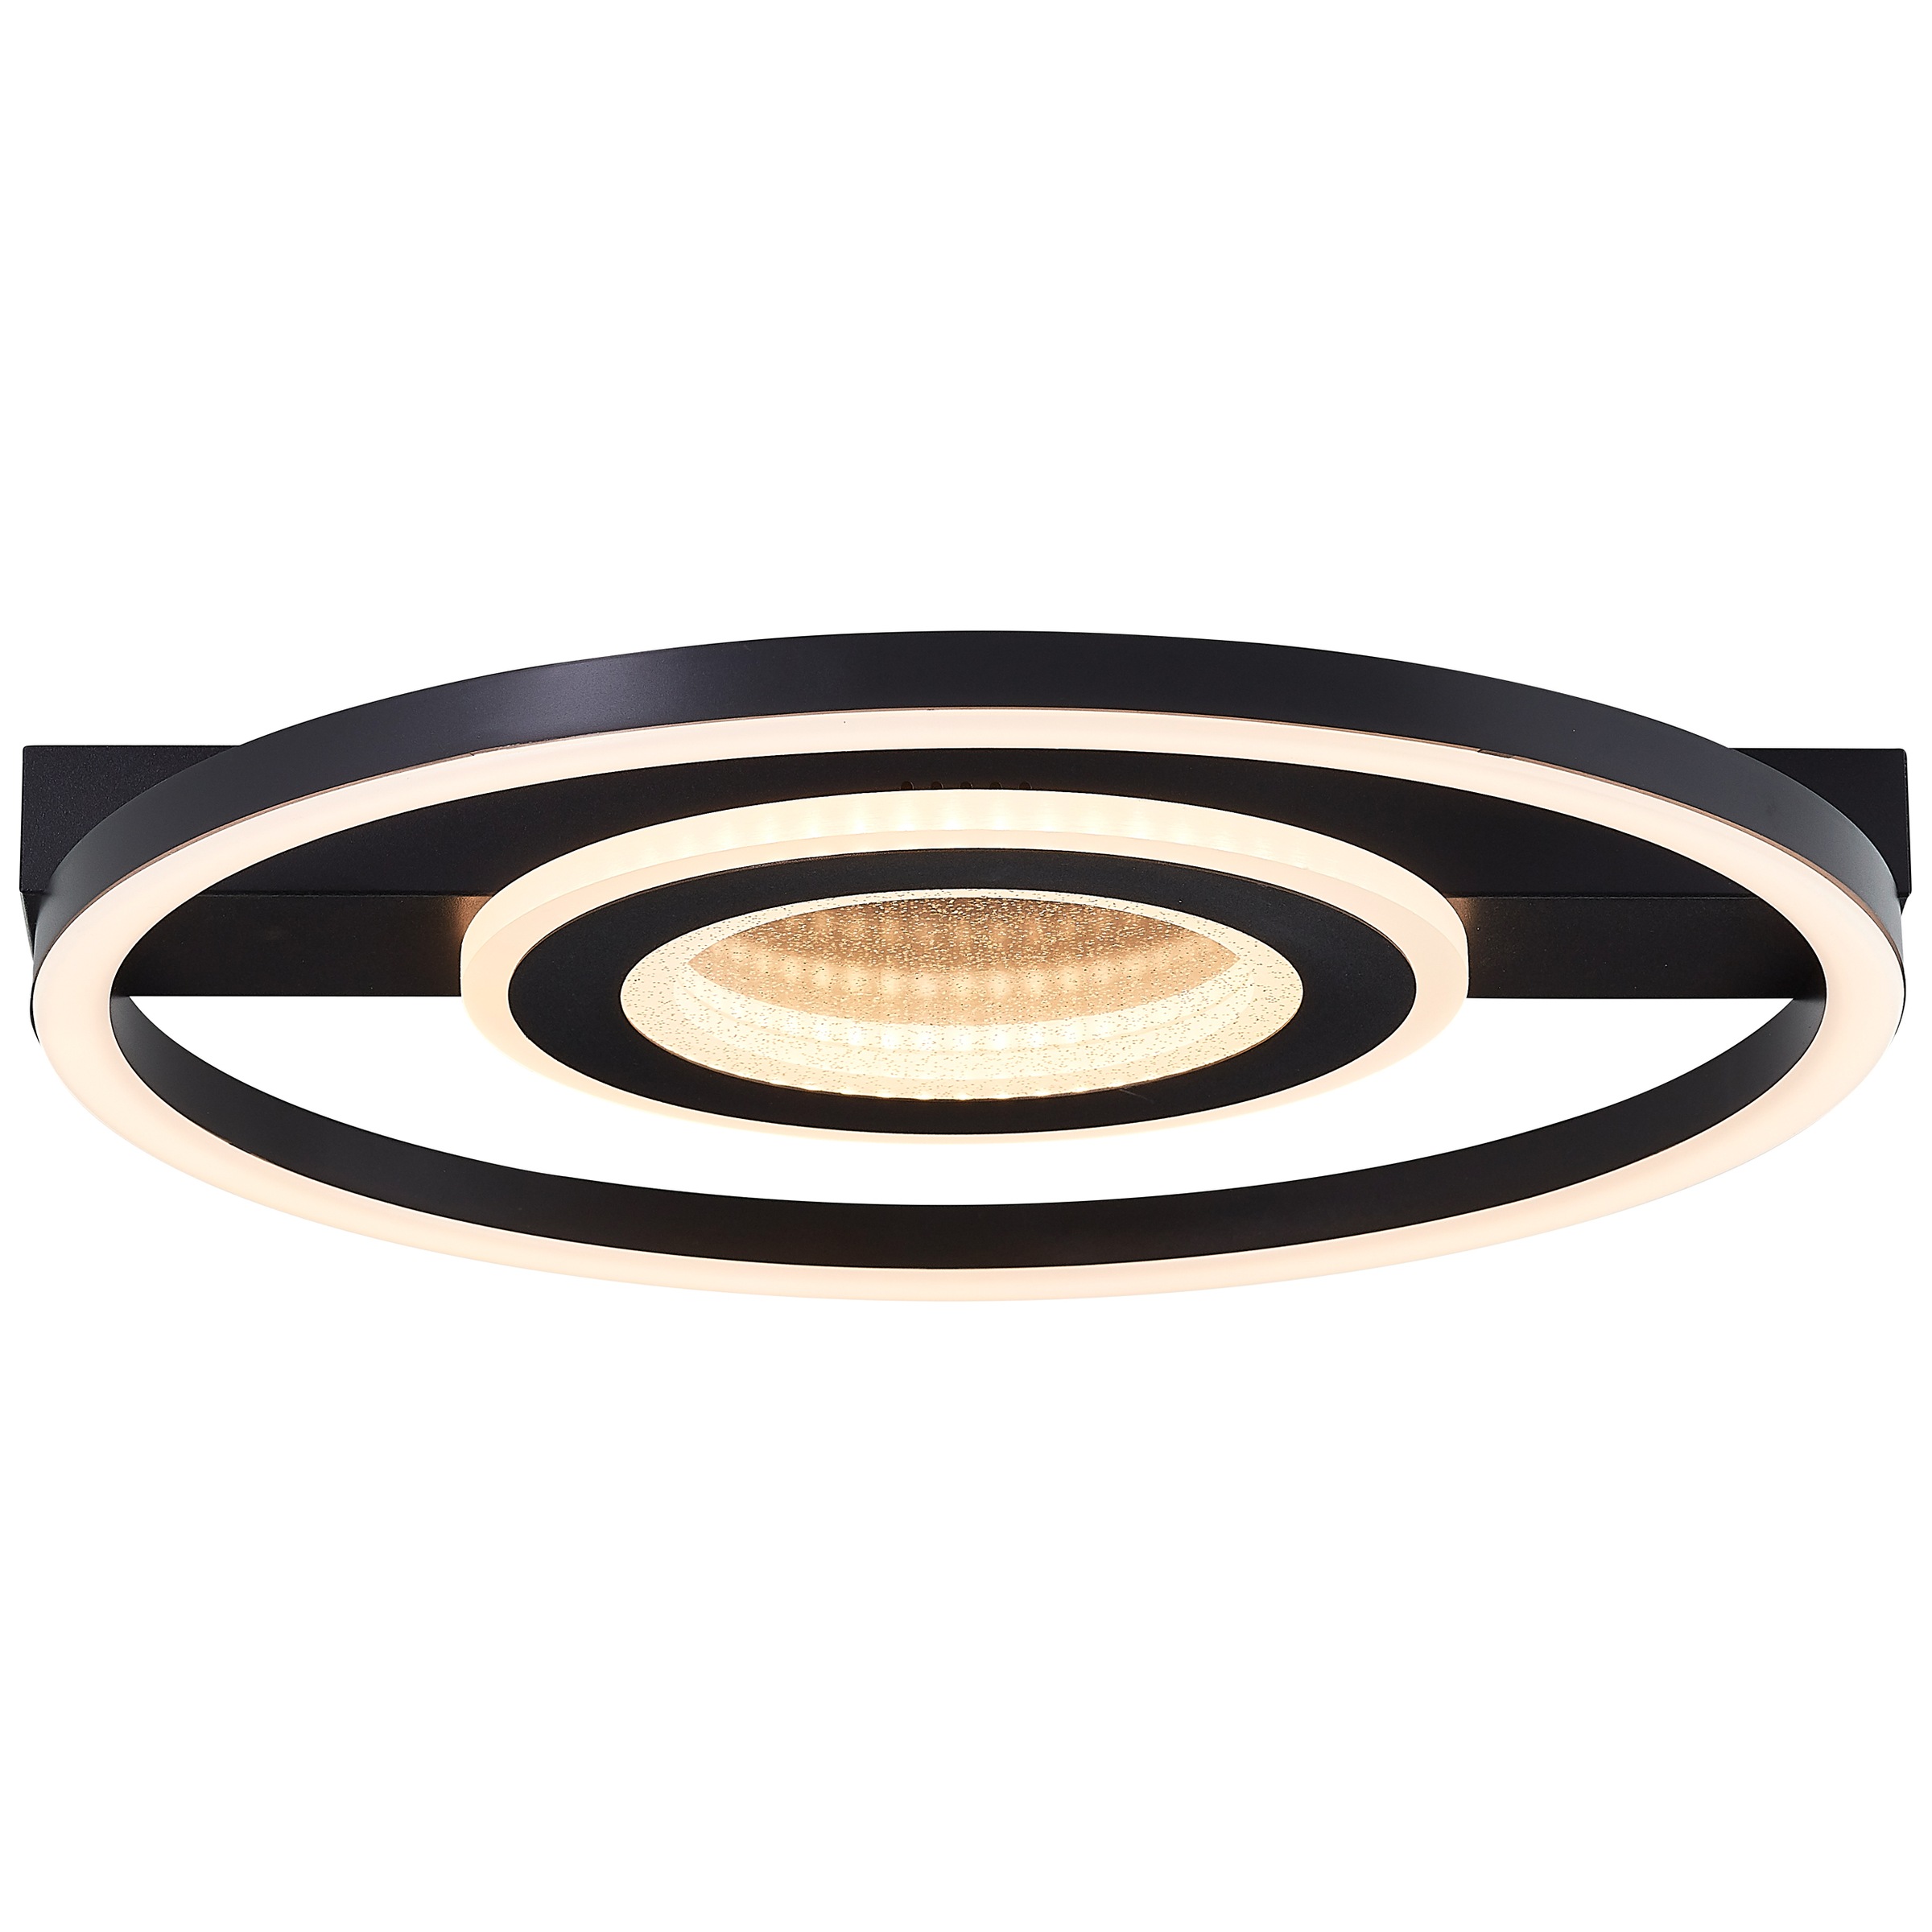 BreLight LED Deckenleuchte »Queens«, 37 x 37 cm, 2400 lm, 3000 K, Glitzereffekt, schwarz